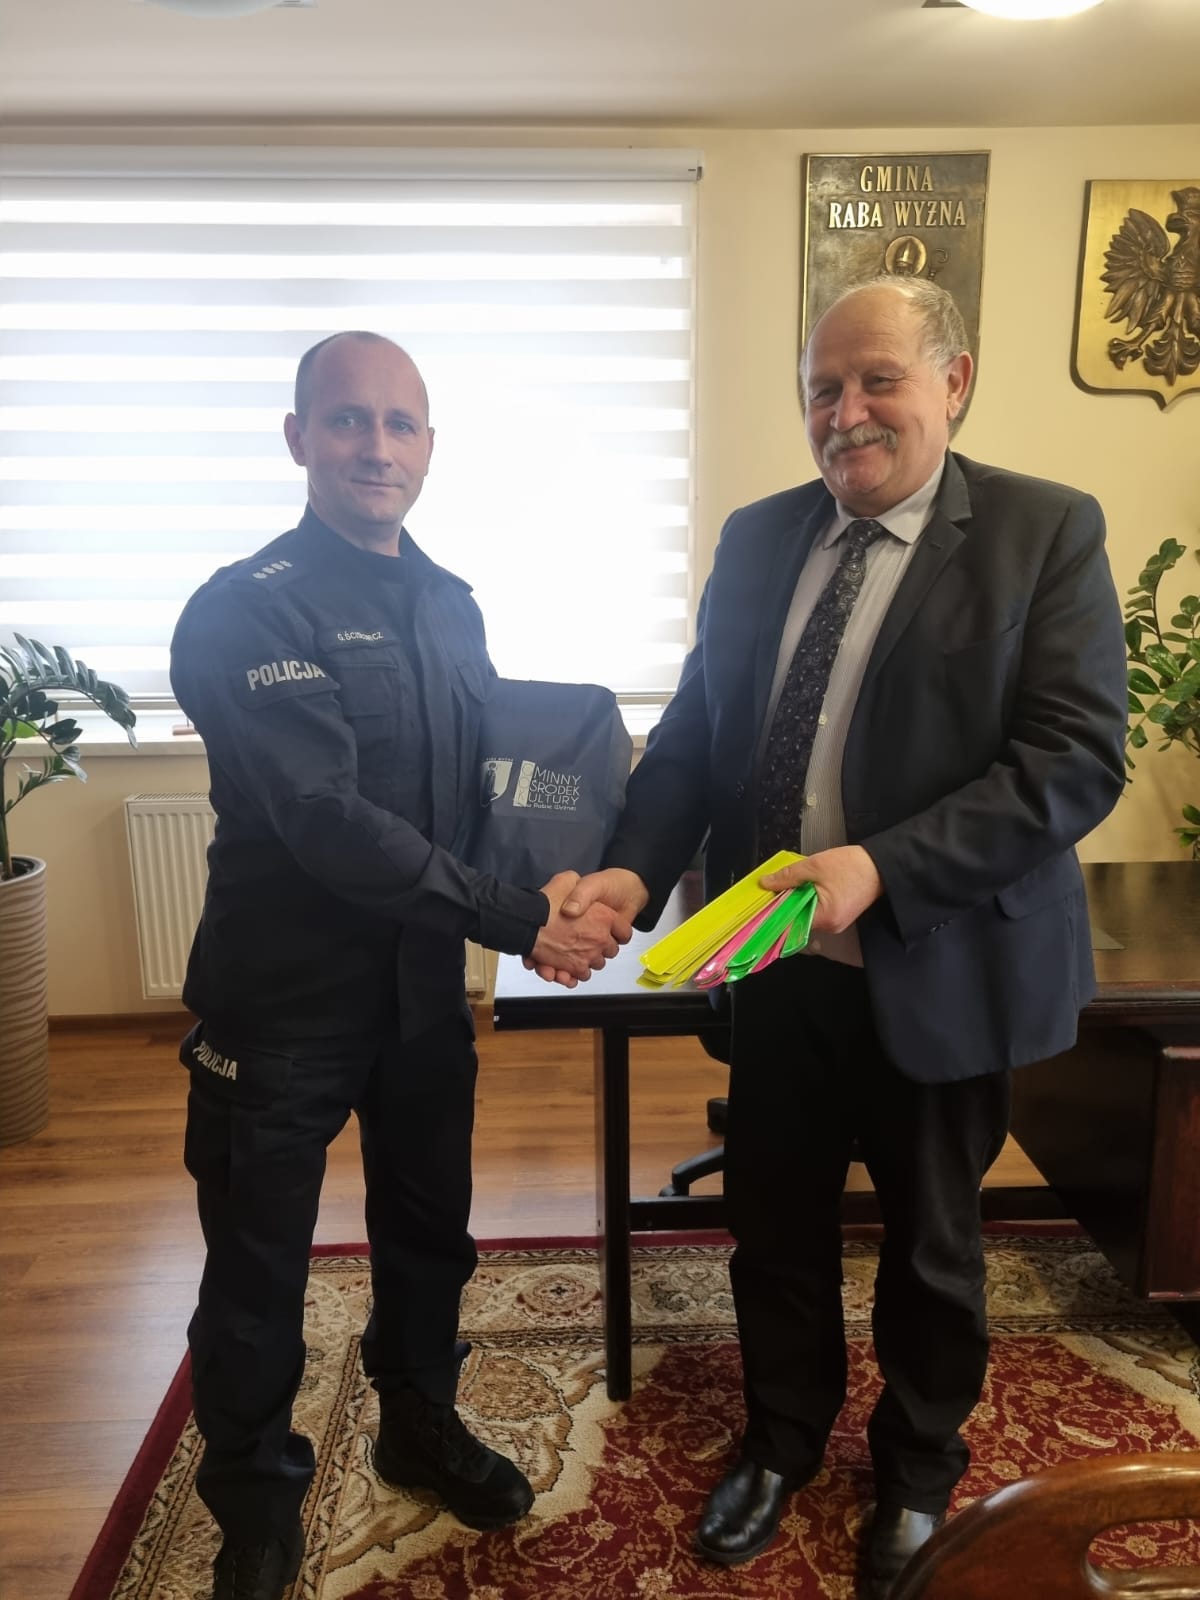 Wójta Gminy Andrzej Dziwisz przekazuje opaski odblaskowe na ręce Komendanta Komisariatu Policji w Rabce Zdrój